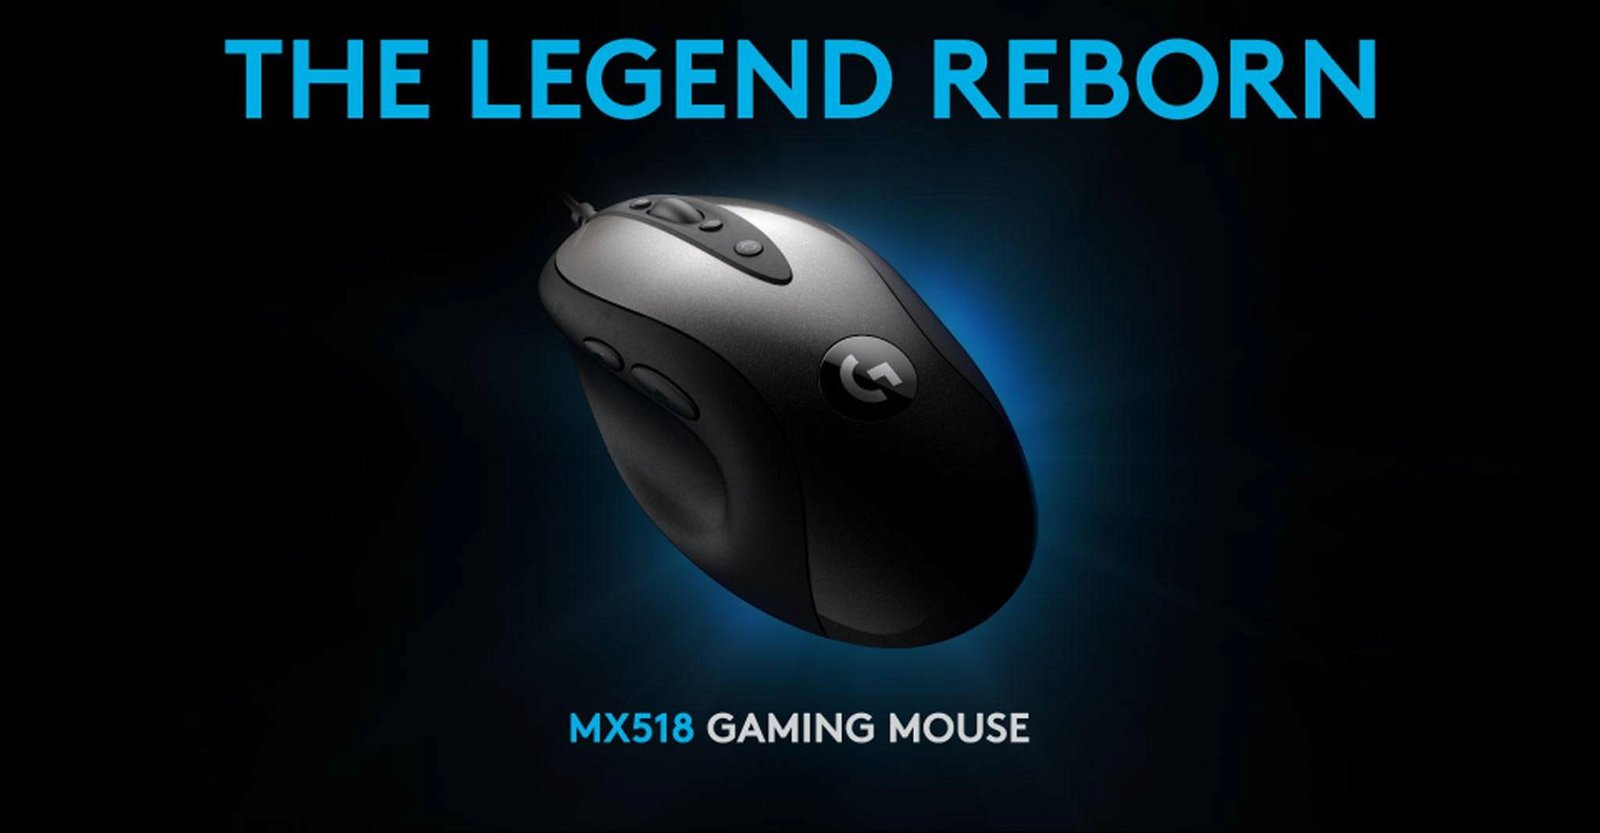 Immagine di Ritorna la leggenda, Logitech riporta in vita il mouse gaming MX518